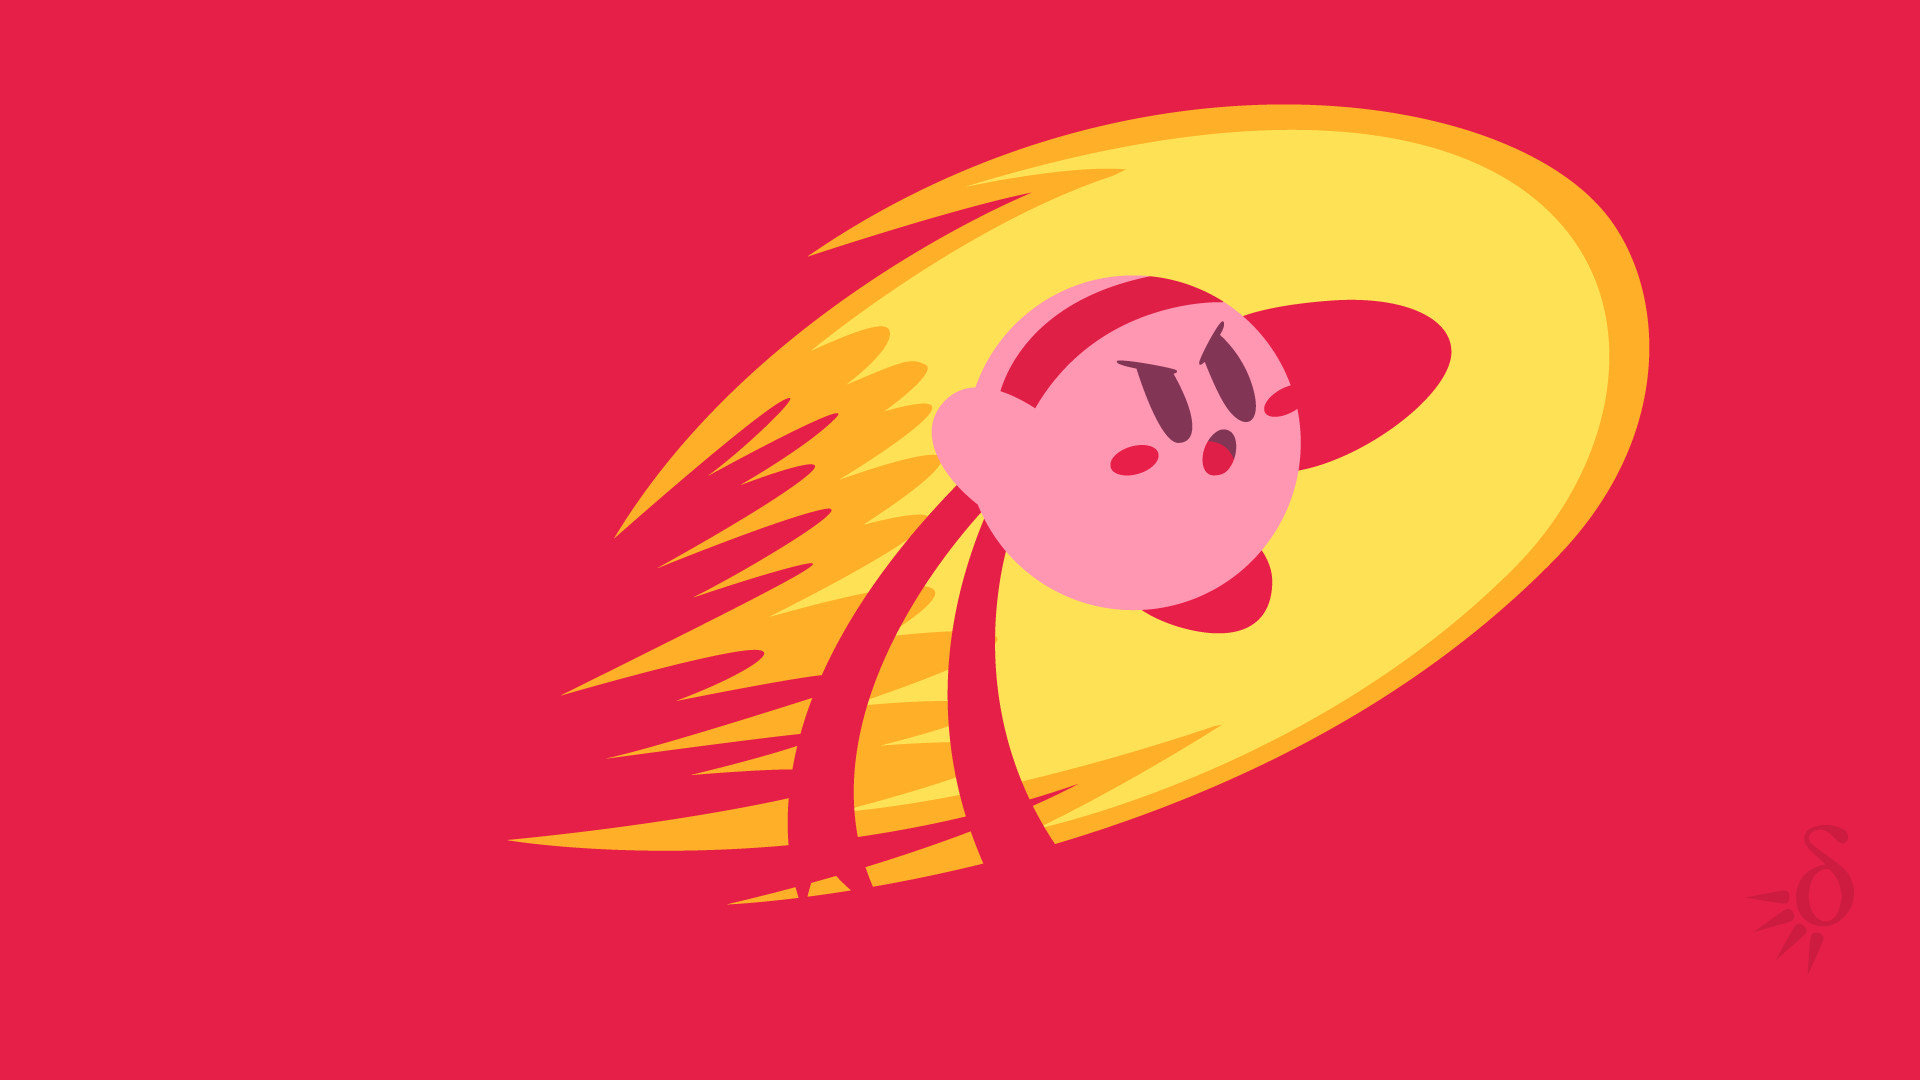 Kirby wallpaper Tumblr